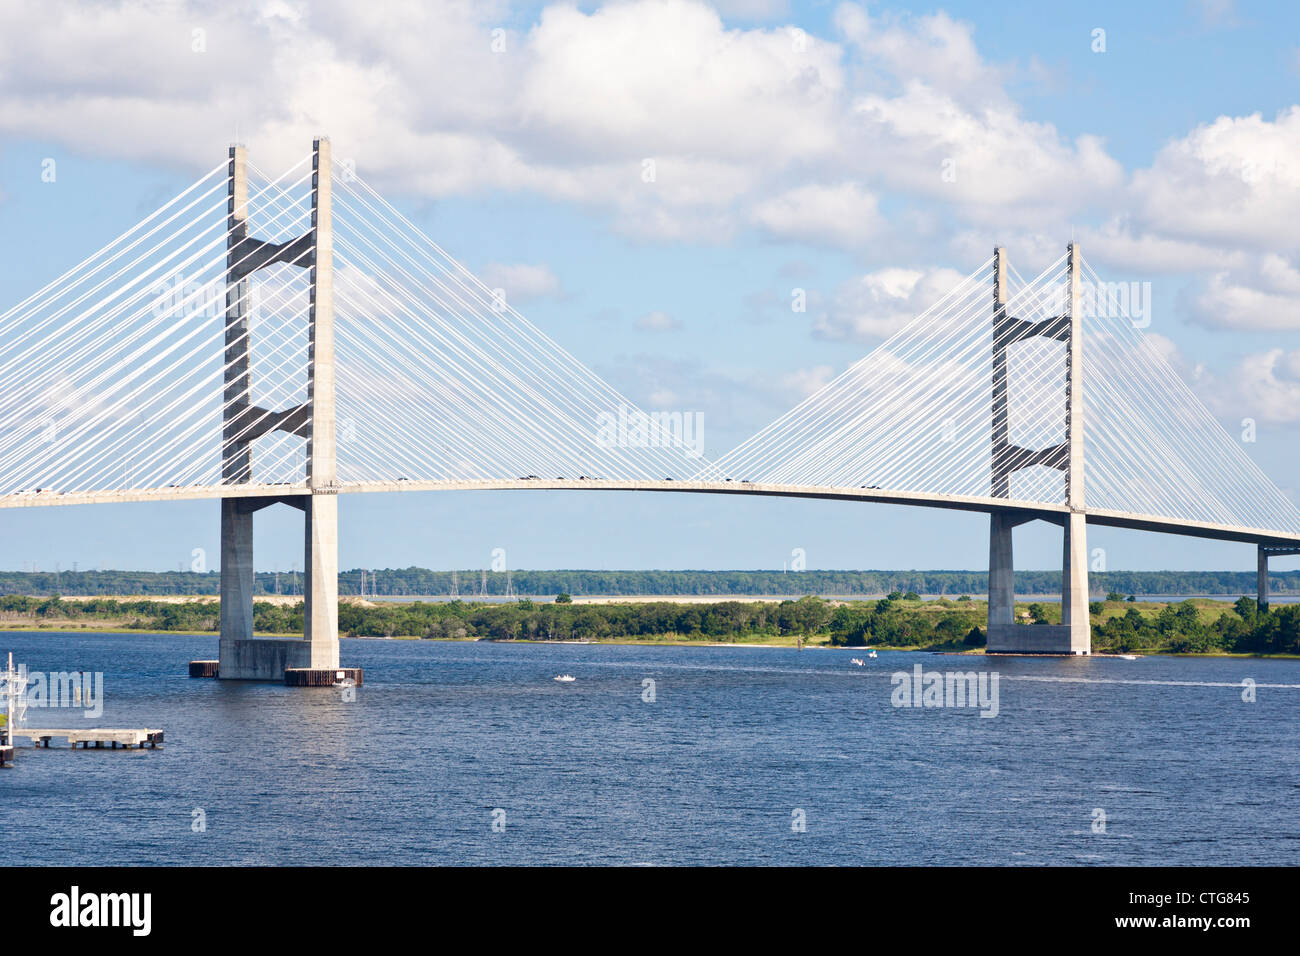 Dames Point puente suspendido sobre el Río St. Johns en Jacksonville, FL. Foto de stock